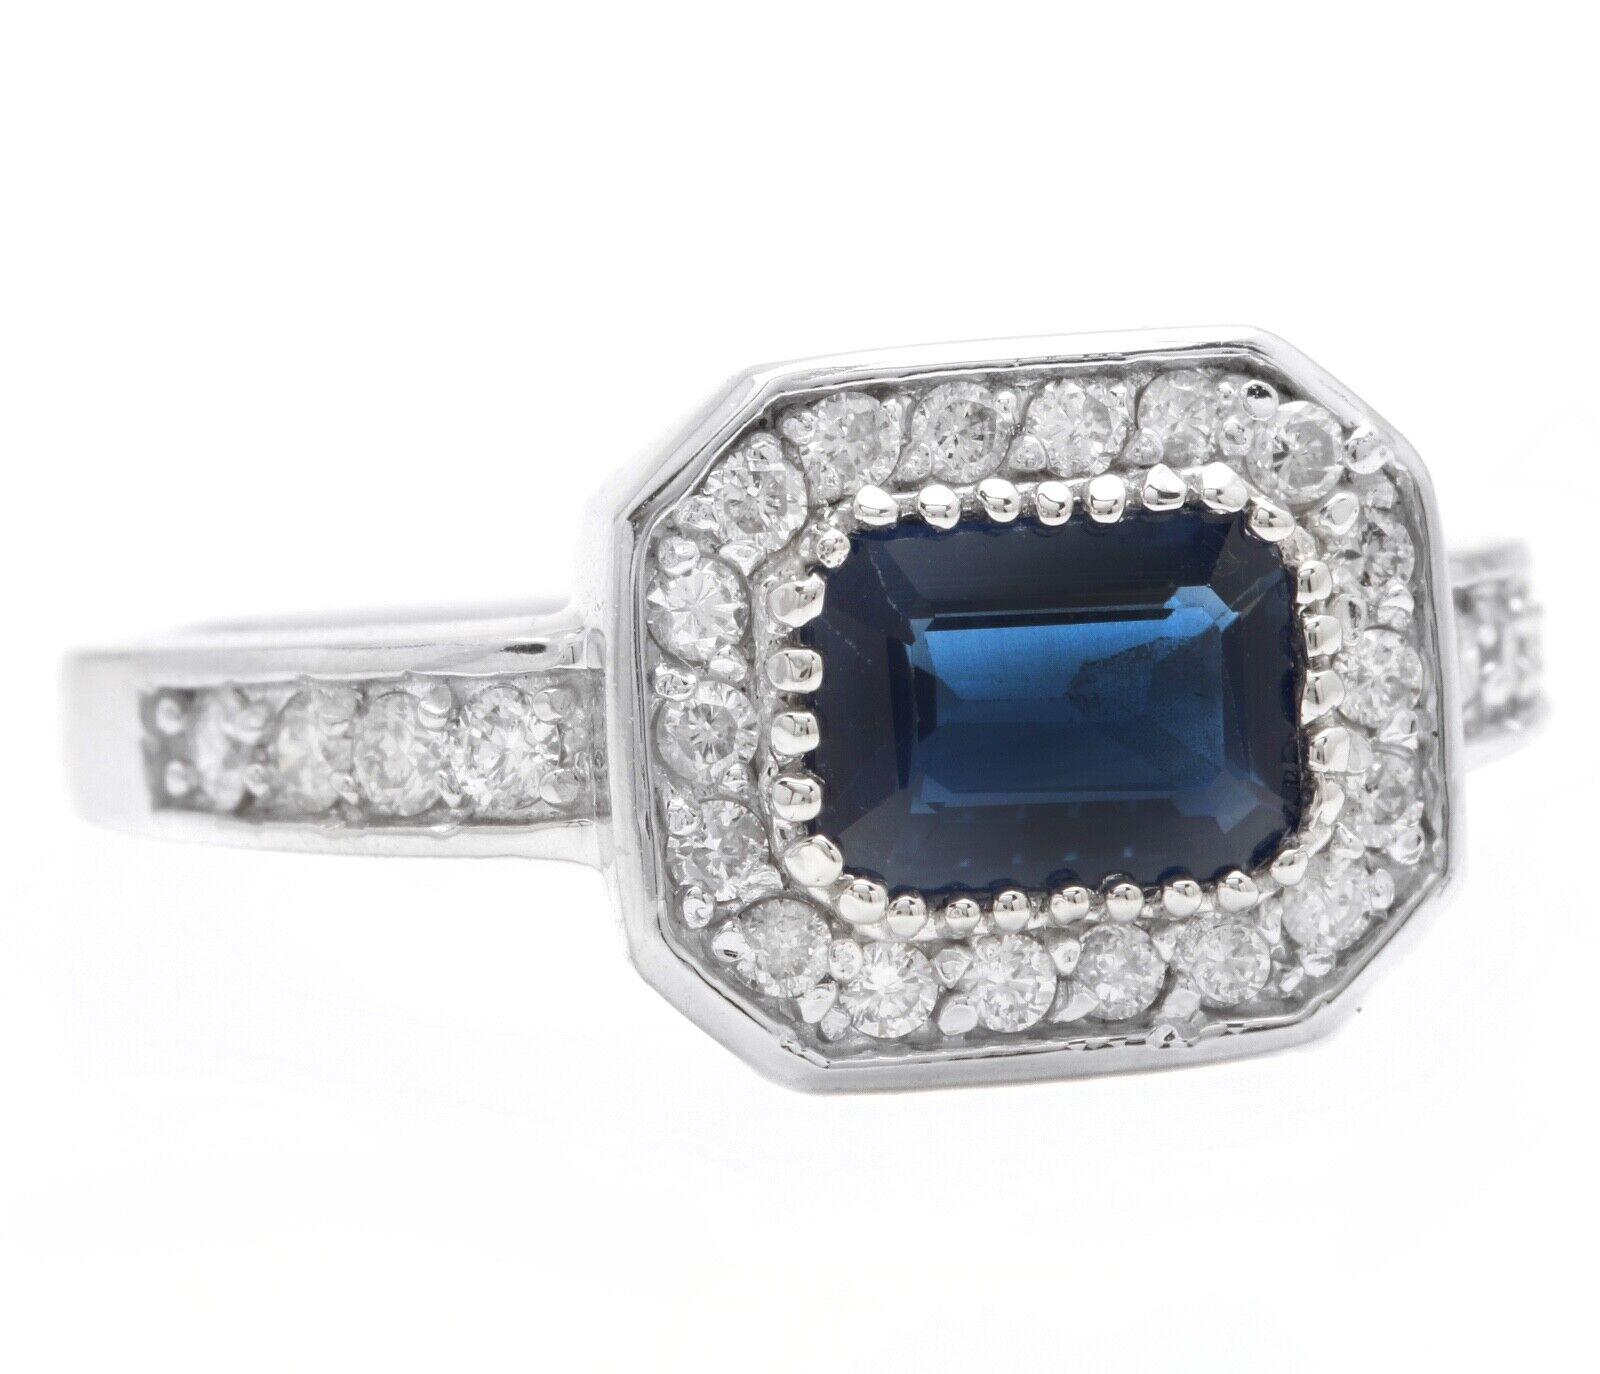 1,50 Karat Exquisite natürlichen blauen Saphir und Diamant 14K Solid White Gold Ring

Vorgeschlagener Wiederbeschaffungswert $5,000.00

Total Blue Sapphire Gewicht ist: 1.10 Karat 

Sapphire Behandlung: Hitze

Saphir Maßnahmen: 8.00 x